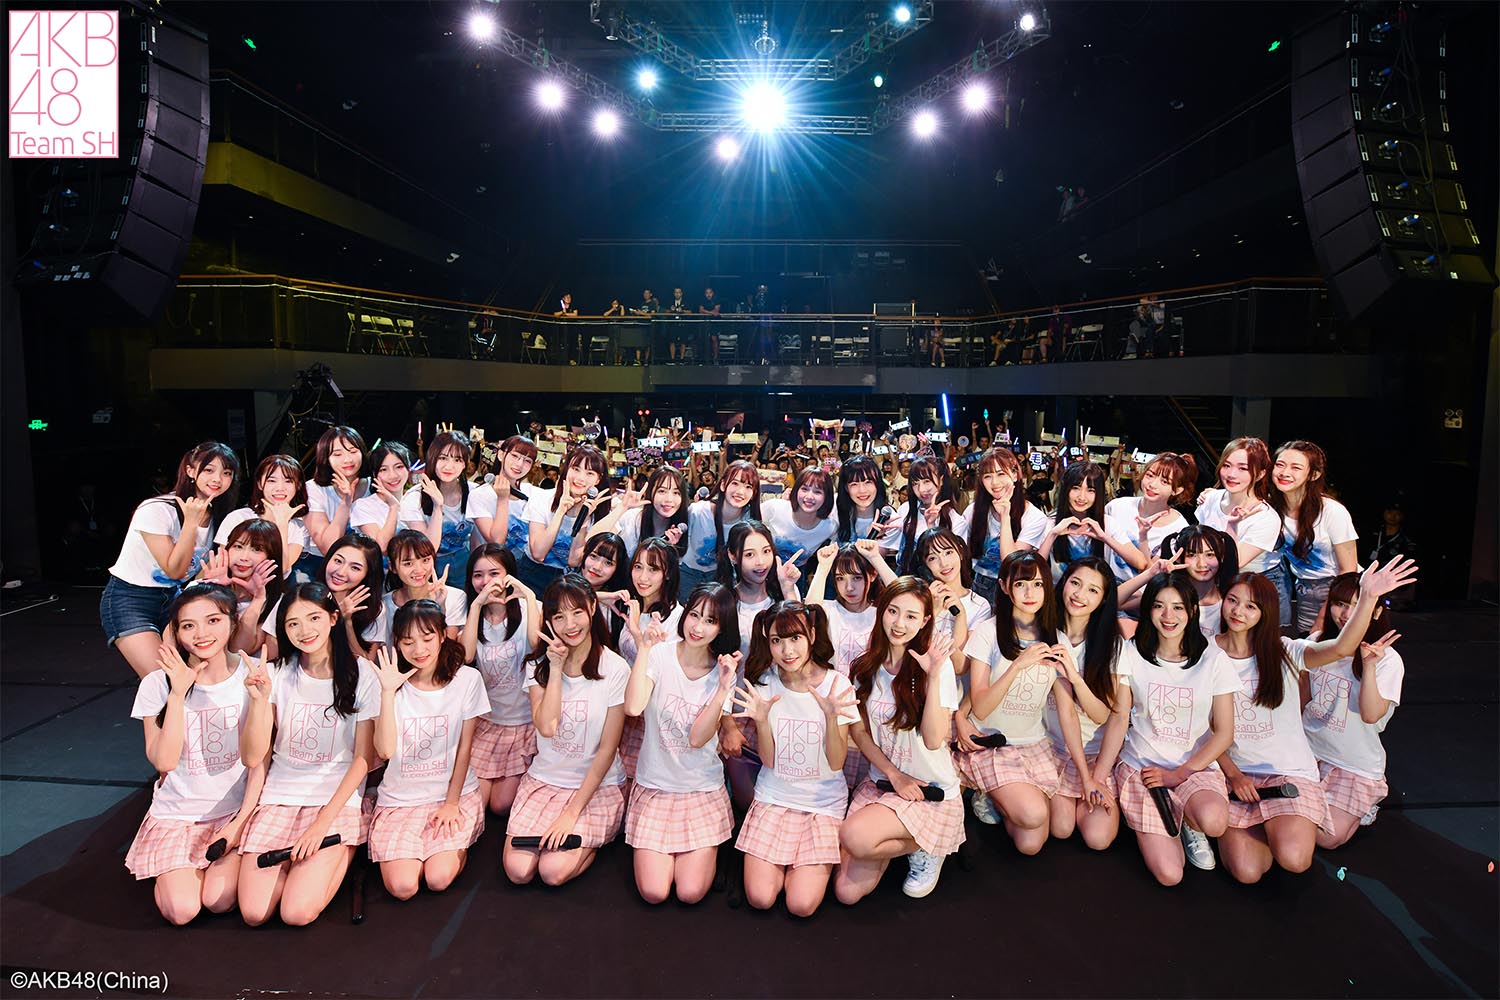 8月24日,akb48 group 2019亚洲盛典上海站完美落幕